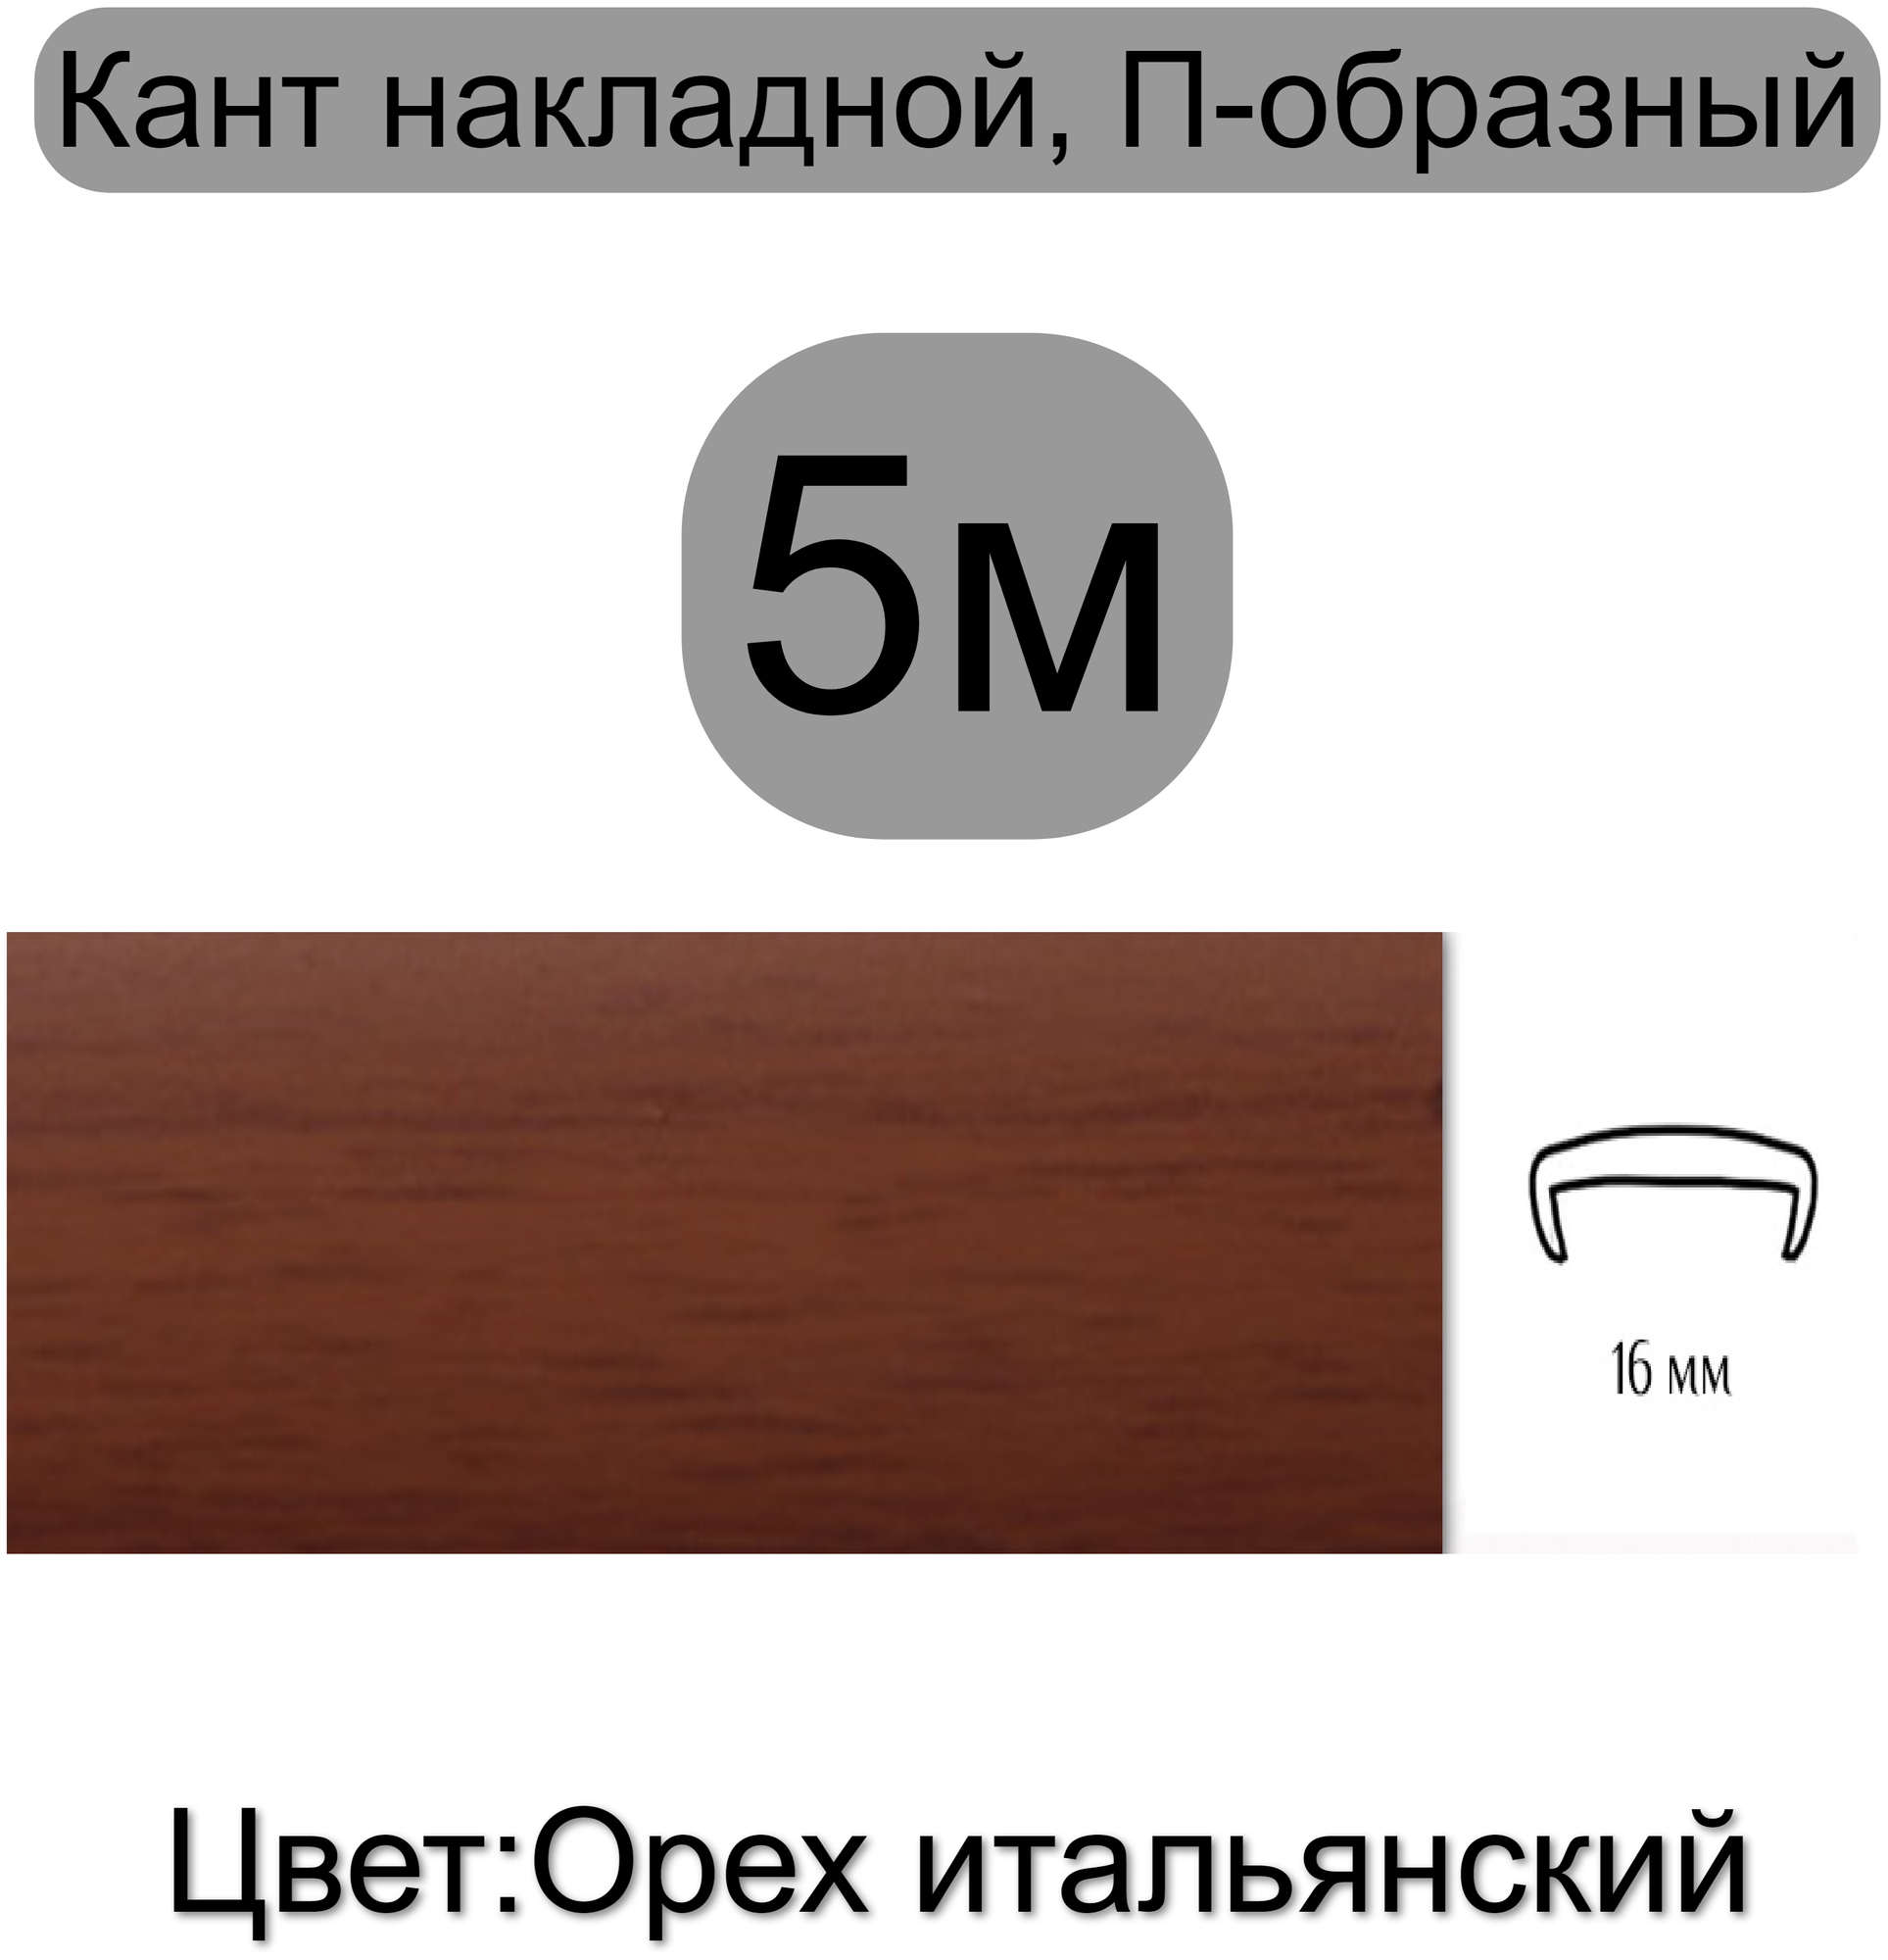 Кромка мебельная профиль ПВХ кант П-образный накладной 16мм H&T WOOD